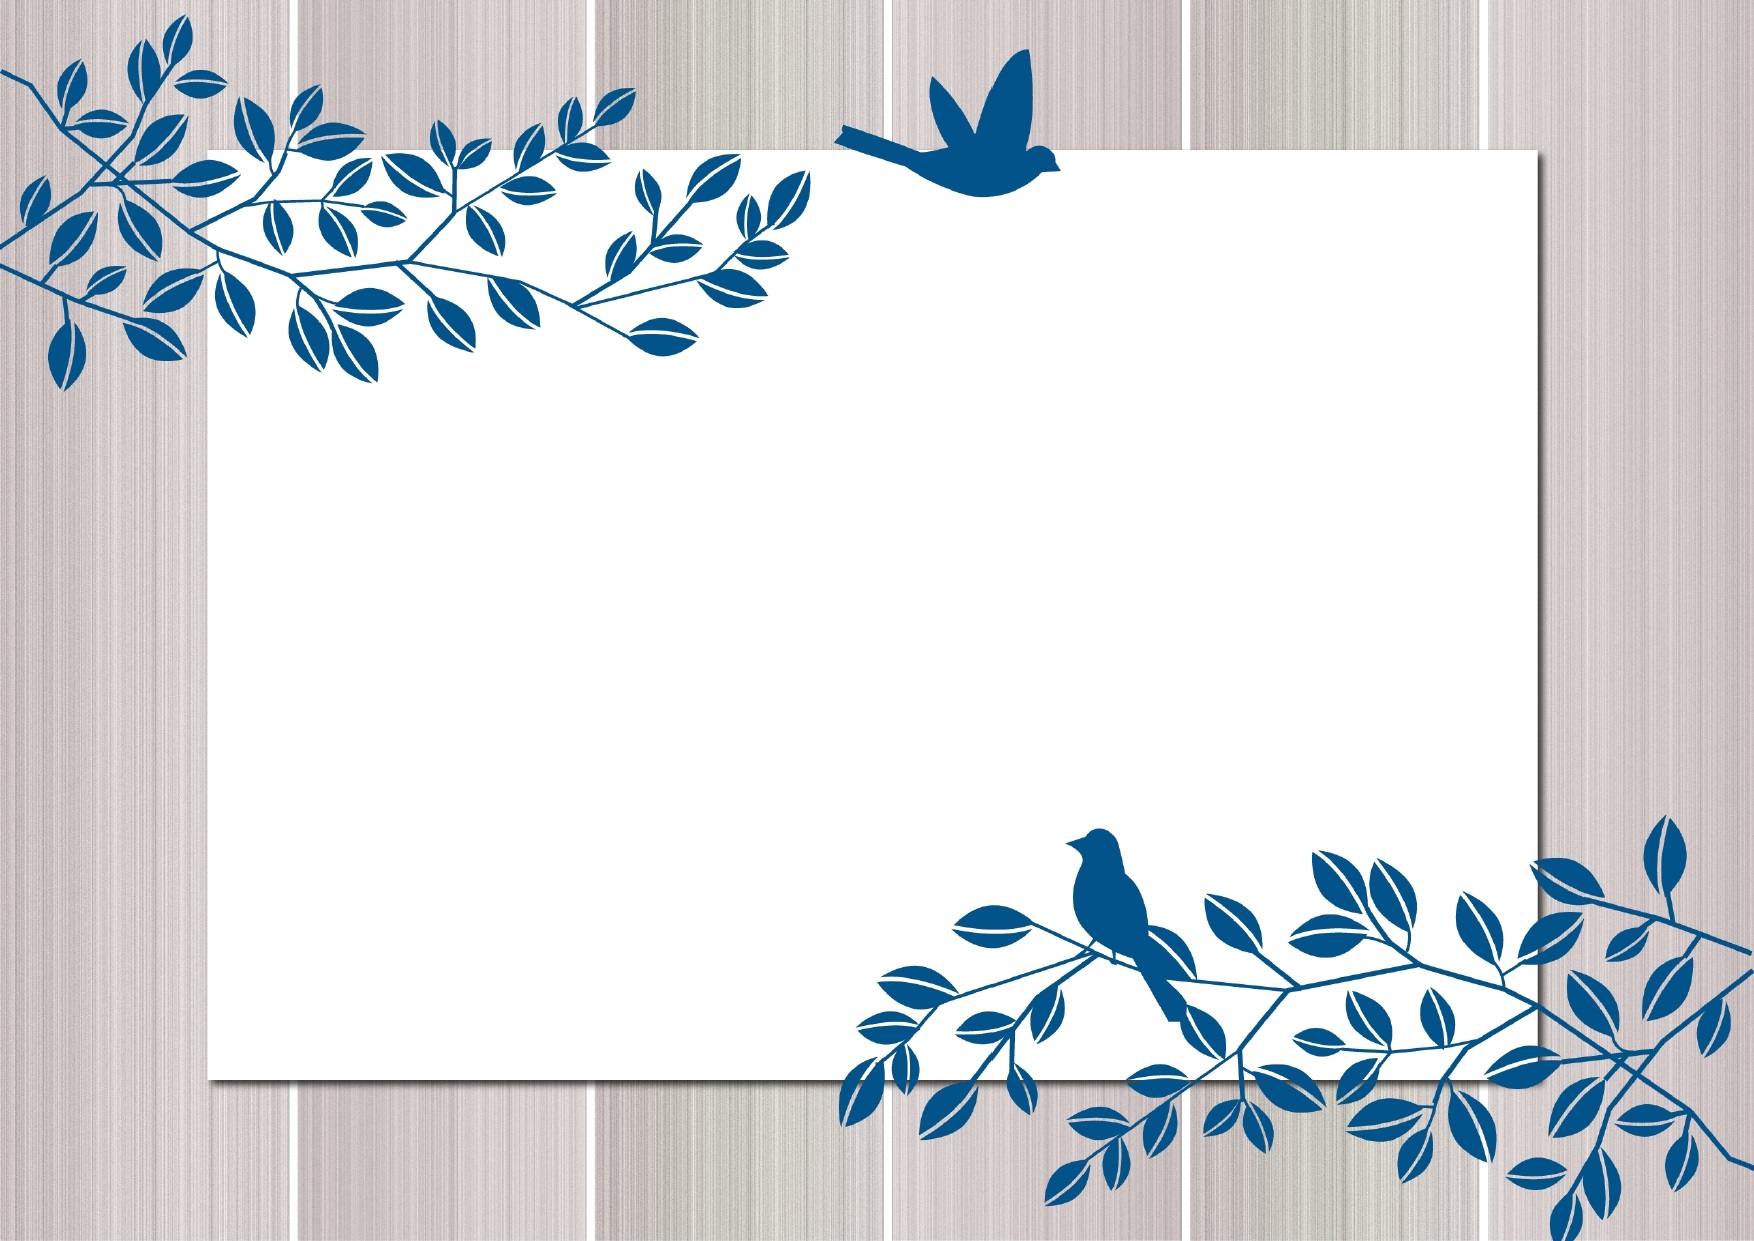 かわいい 葉っぱと青い鳥の無料イラストフレーム 飾り枠の素材 無料ダウンロード テンプレルン